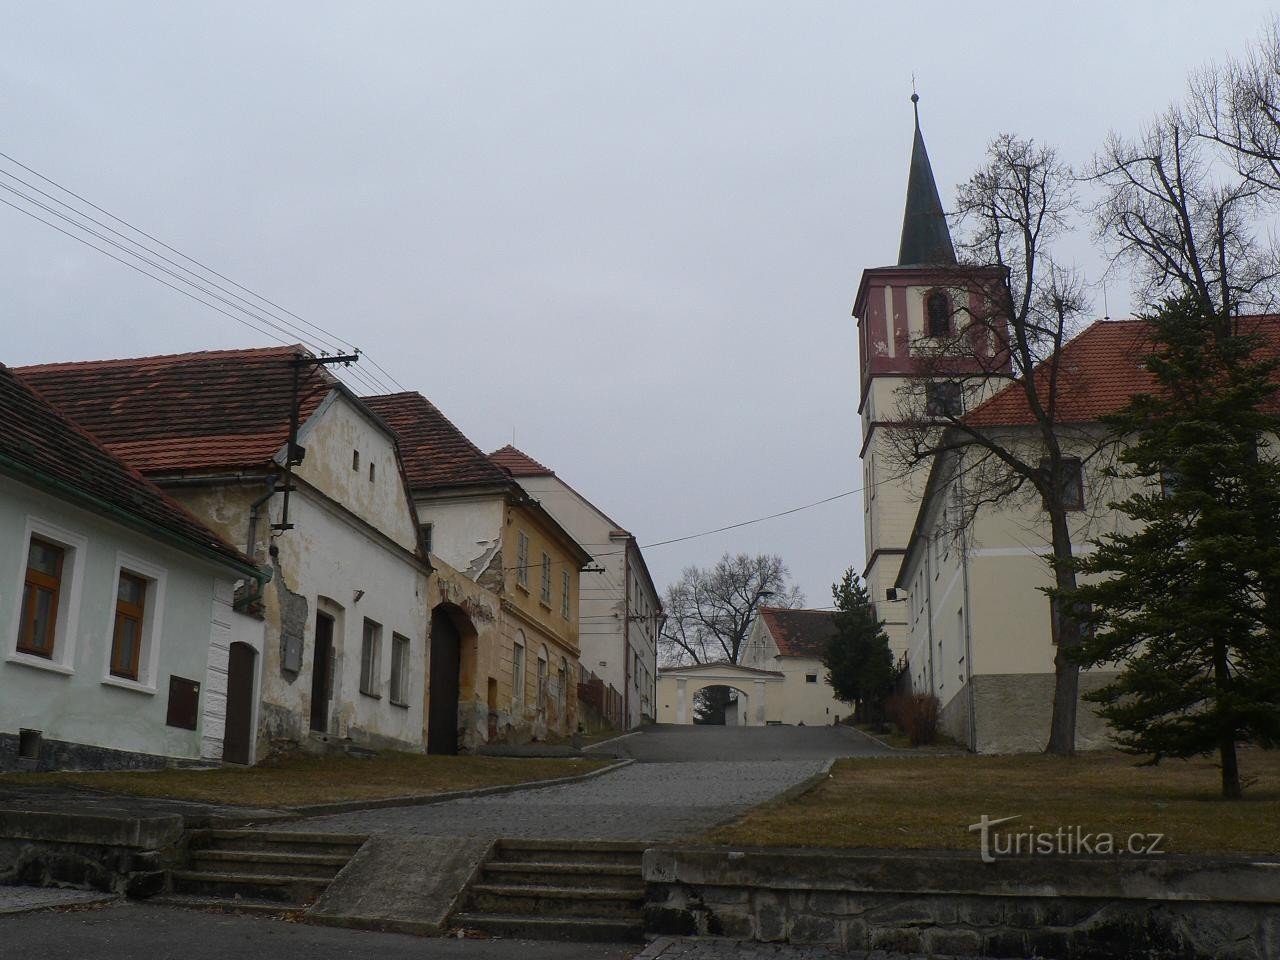 Volenice, parte da vila perto da igreja